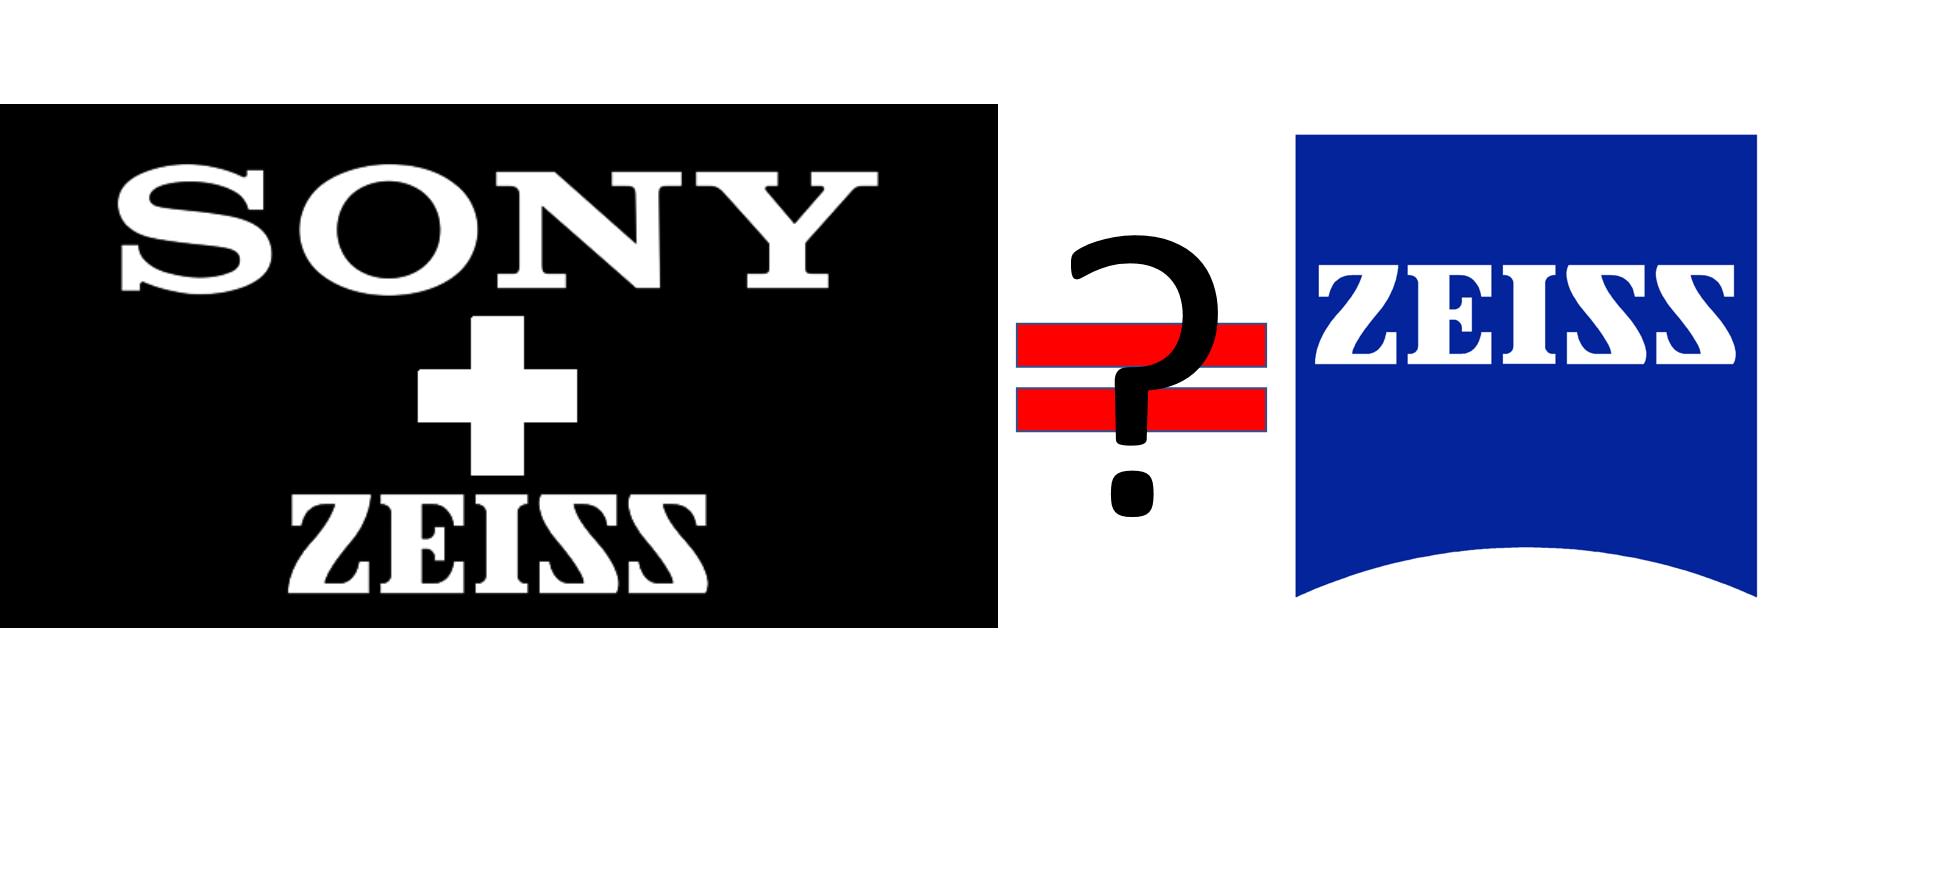 [聊攝影182] Sony 鏡頭推薦購買心得 – ZEISS 鏡頭篇，帶你一次認識 Sony E 接環 ZEISS 鏡頭